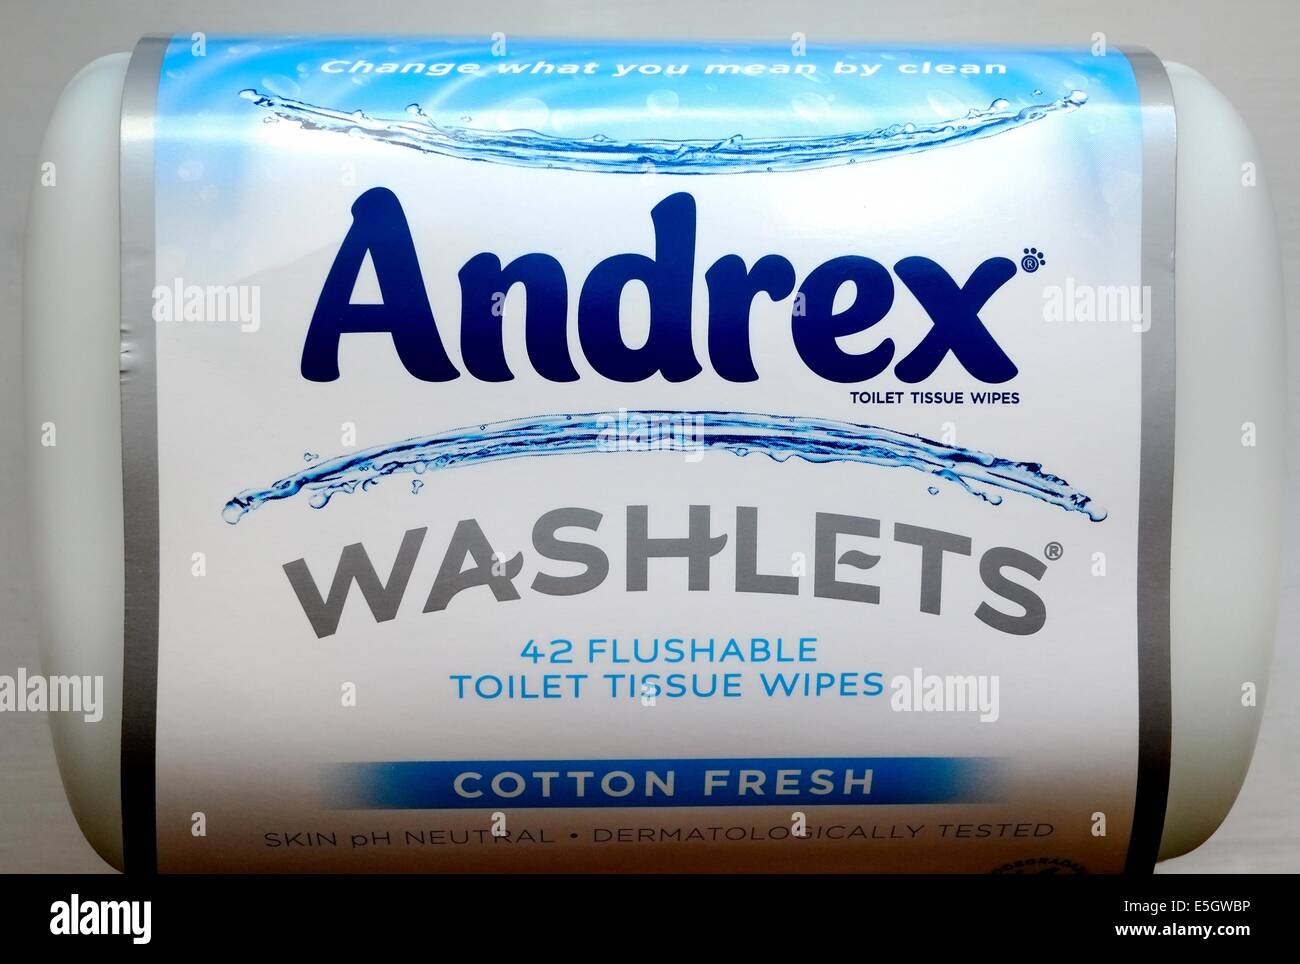 Andrex washlets flushable toilet tissue wipes Stock Photo